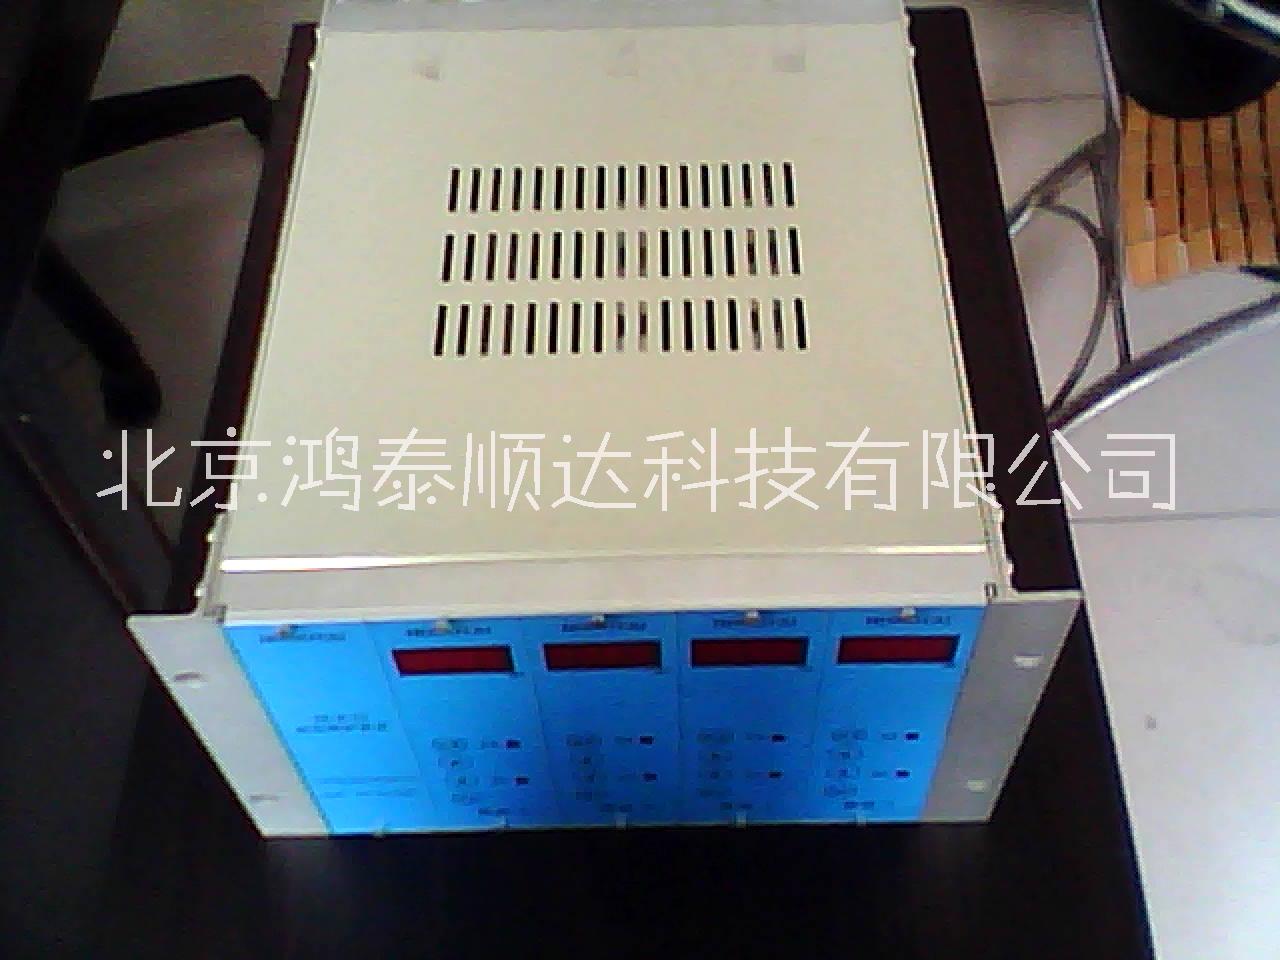 北京鸿泰顺达长期供应HTJM-C-3智能转速监测保护仪；HTJM-C-3智能转速监测保护仪市场价格|供货电话